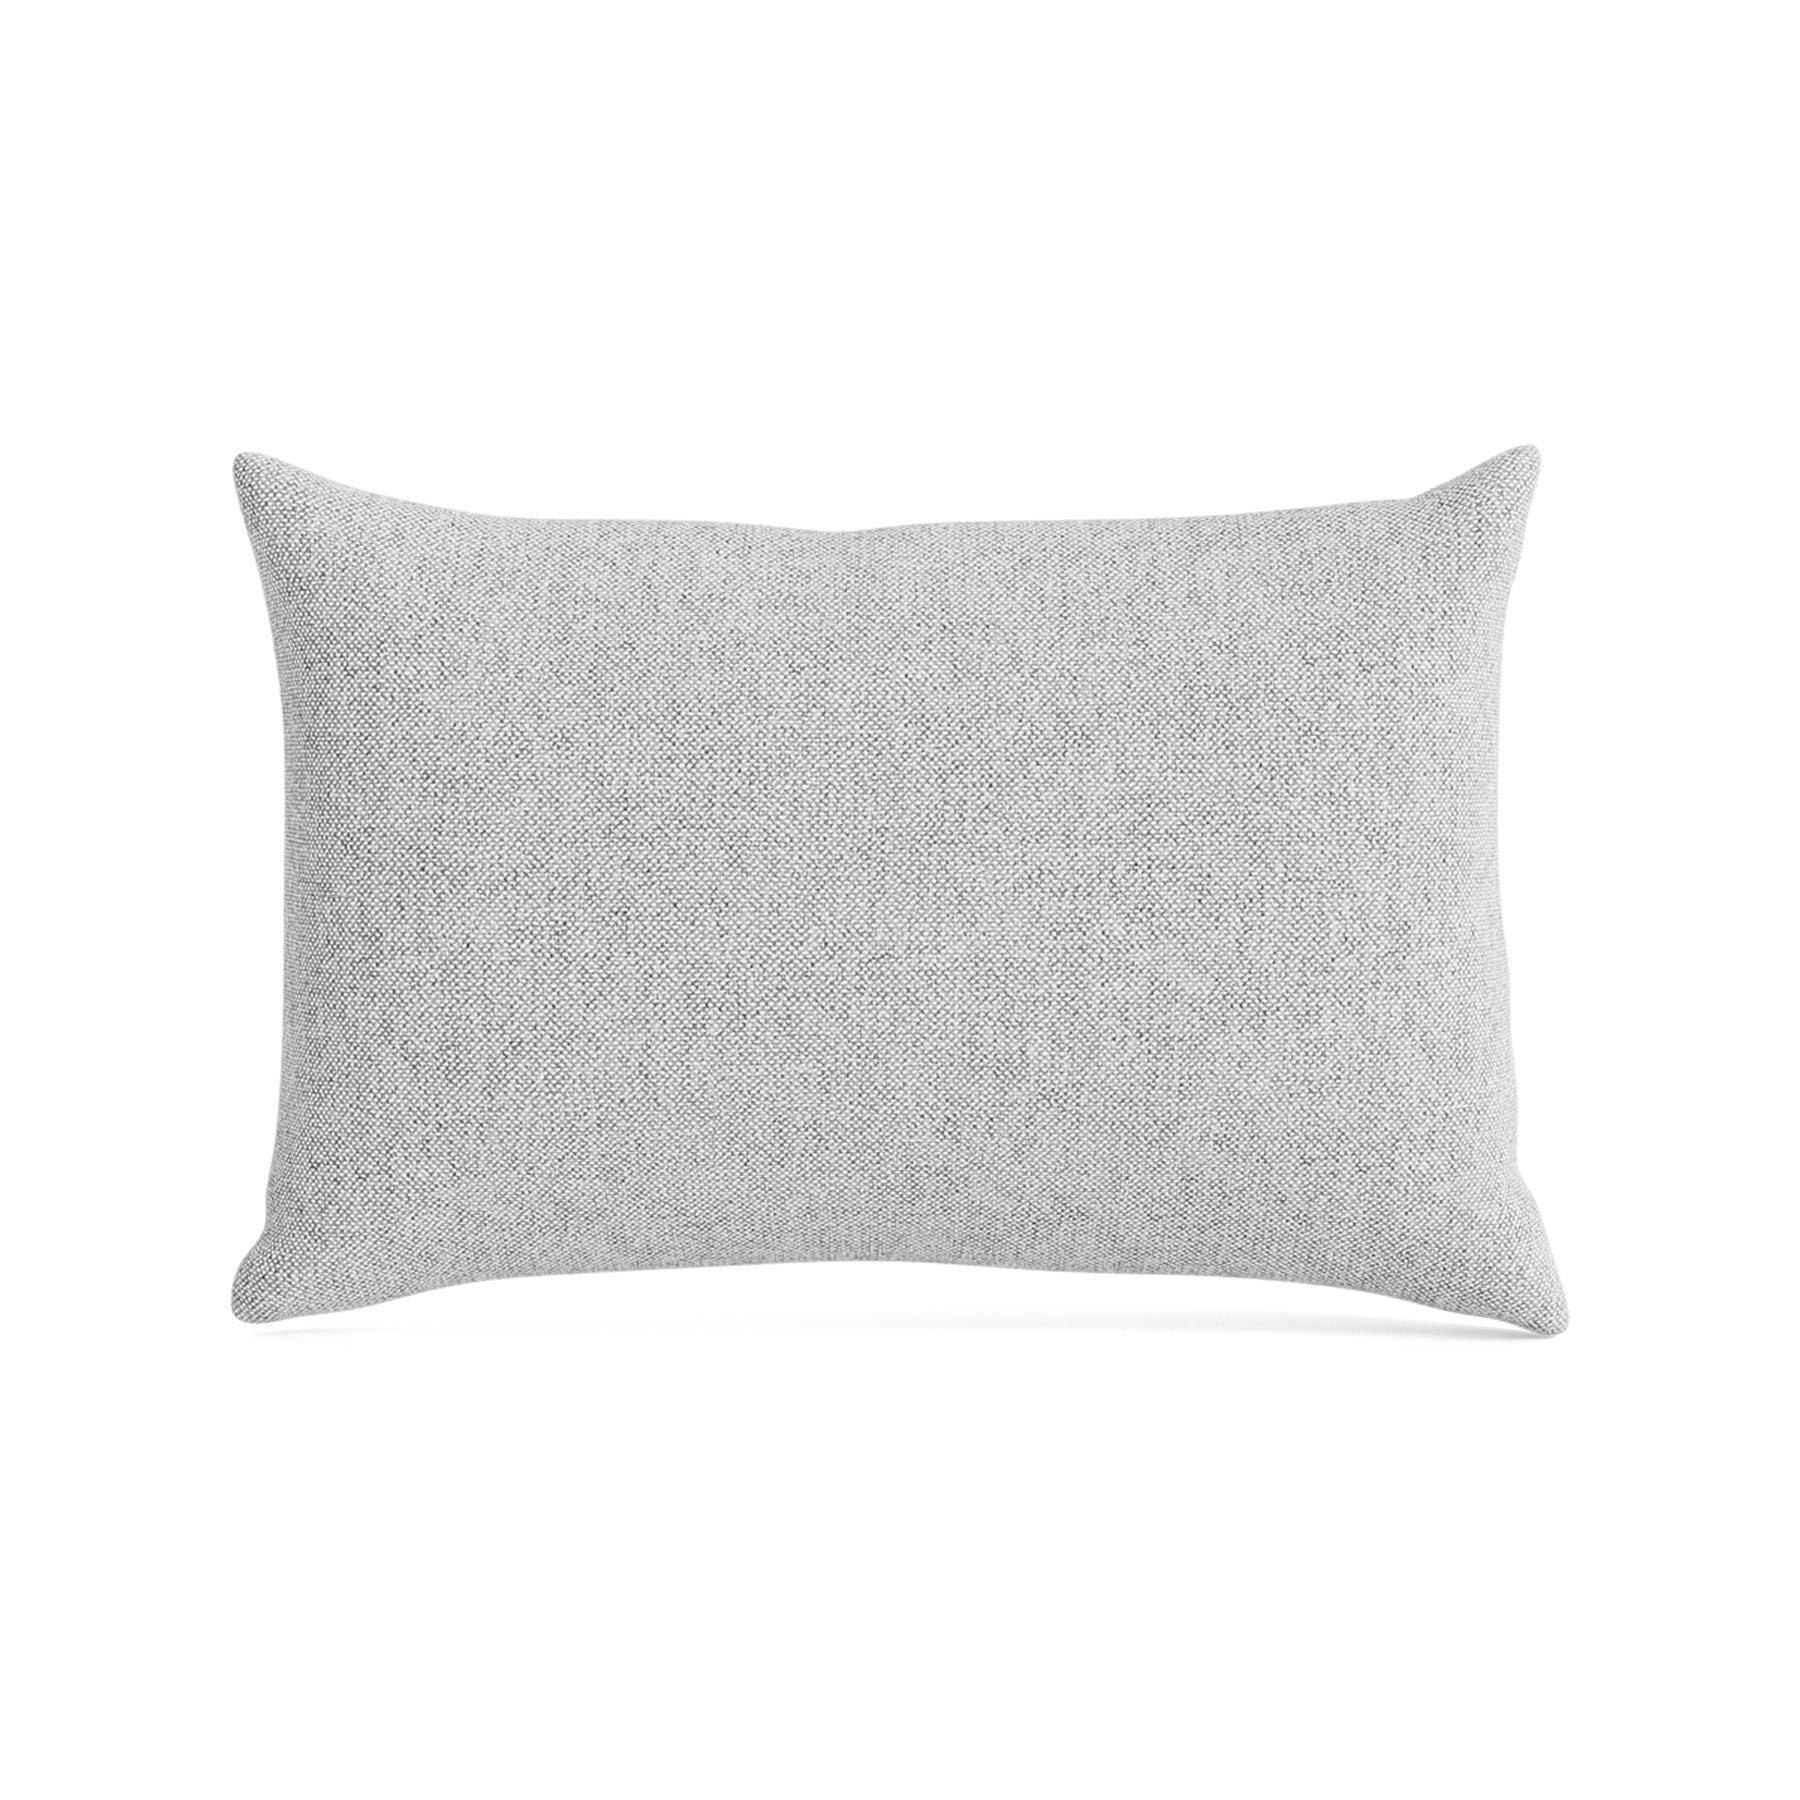 Make Nordic Pillow 40cmx60cm Hallingdal 116 Down And Fibers Grey